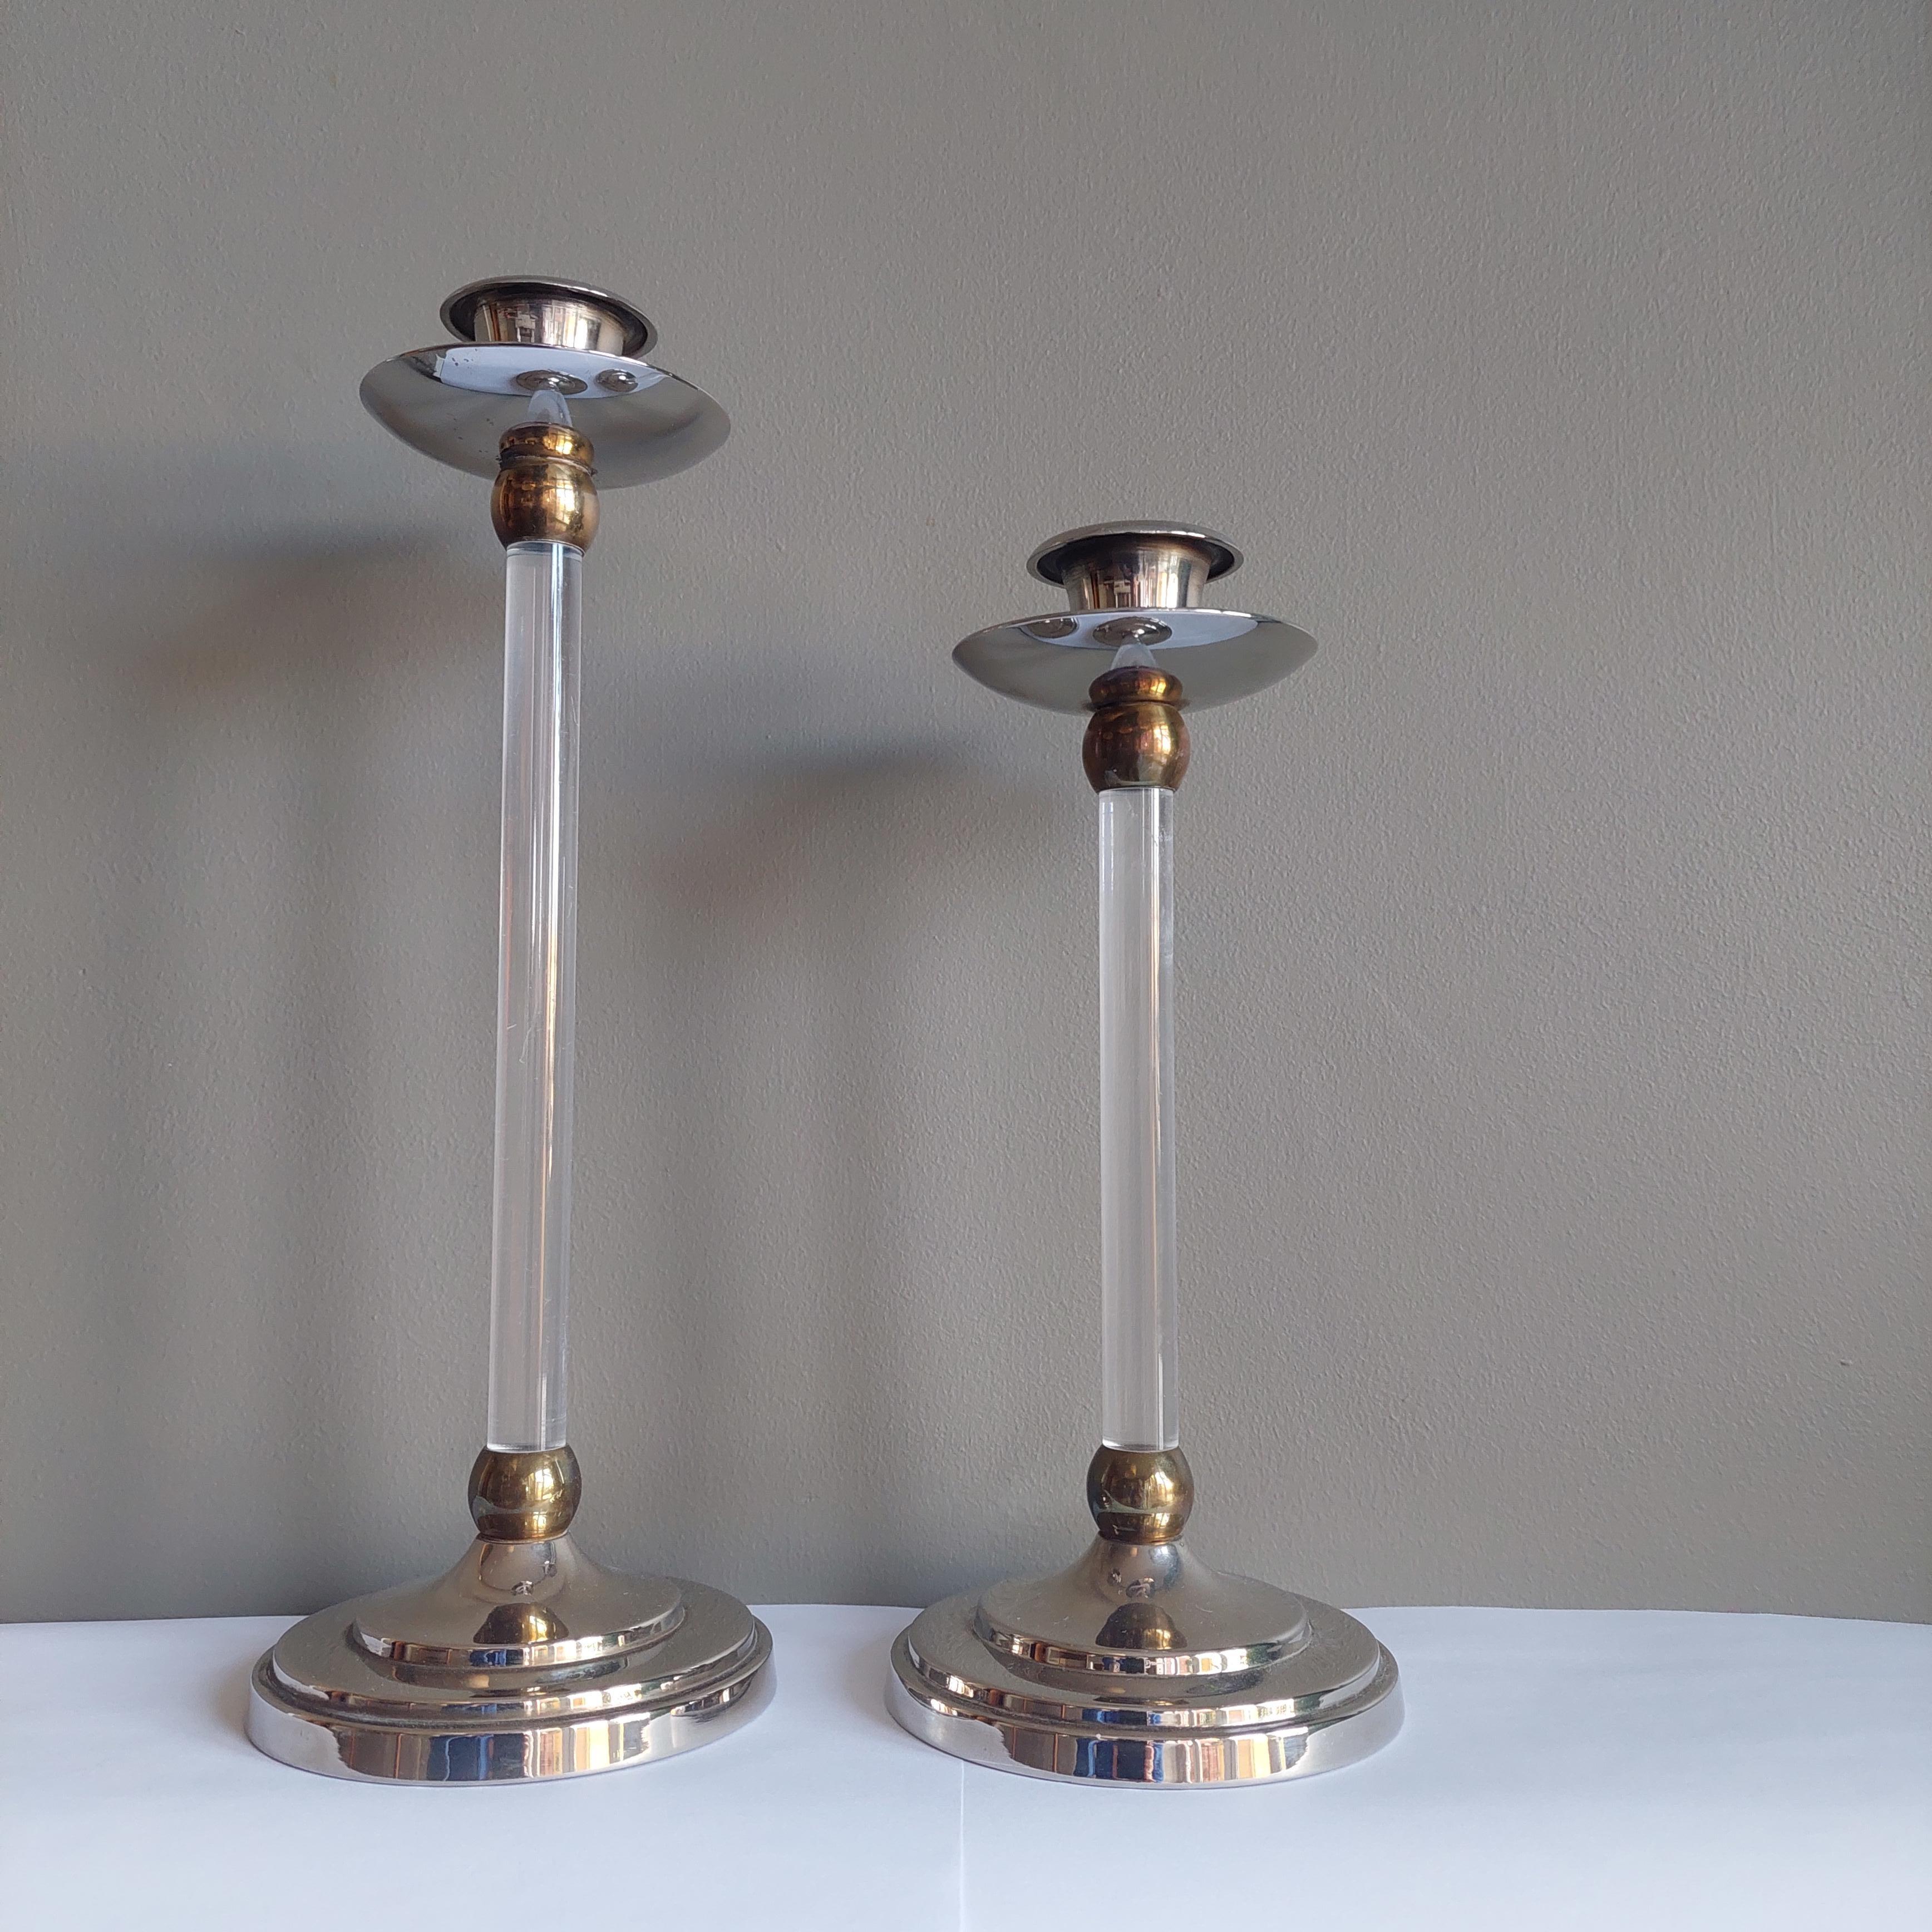 Estrid Ericson, paire de chandeliers en laiton doré et argenté. 
Base circulaire moulée en vernis argenté et surmontée d'une tige cylindrique en plexiglas ornée de deux anneaux en laiton à chaque extrémité. 
Les deux chandeliers se terminent par